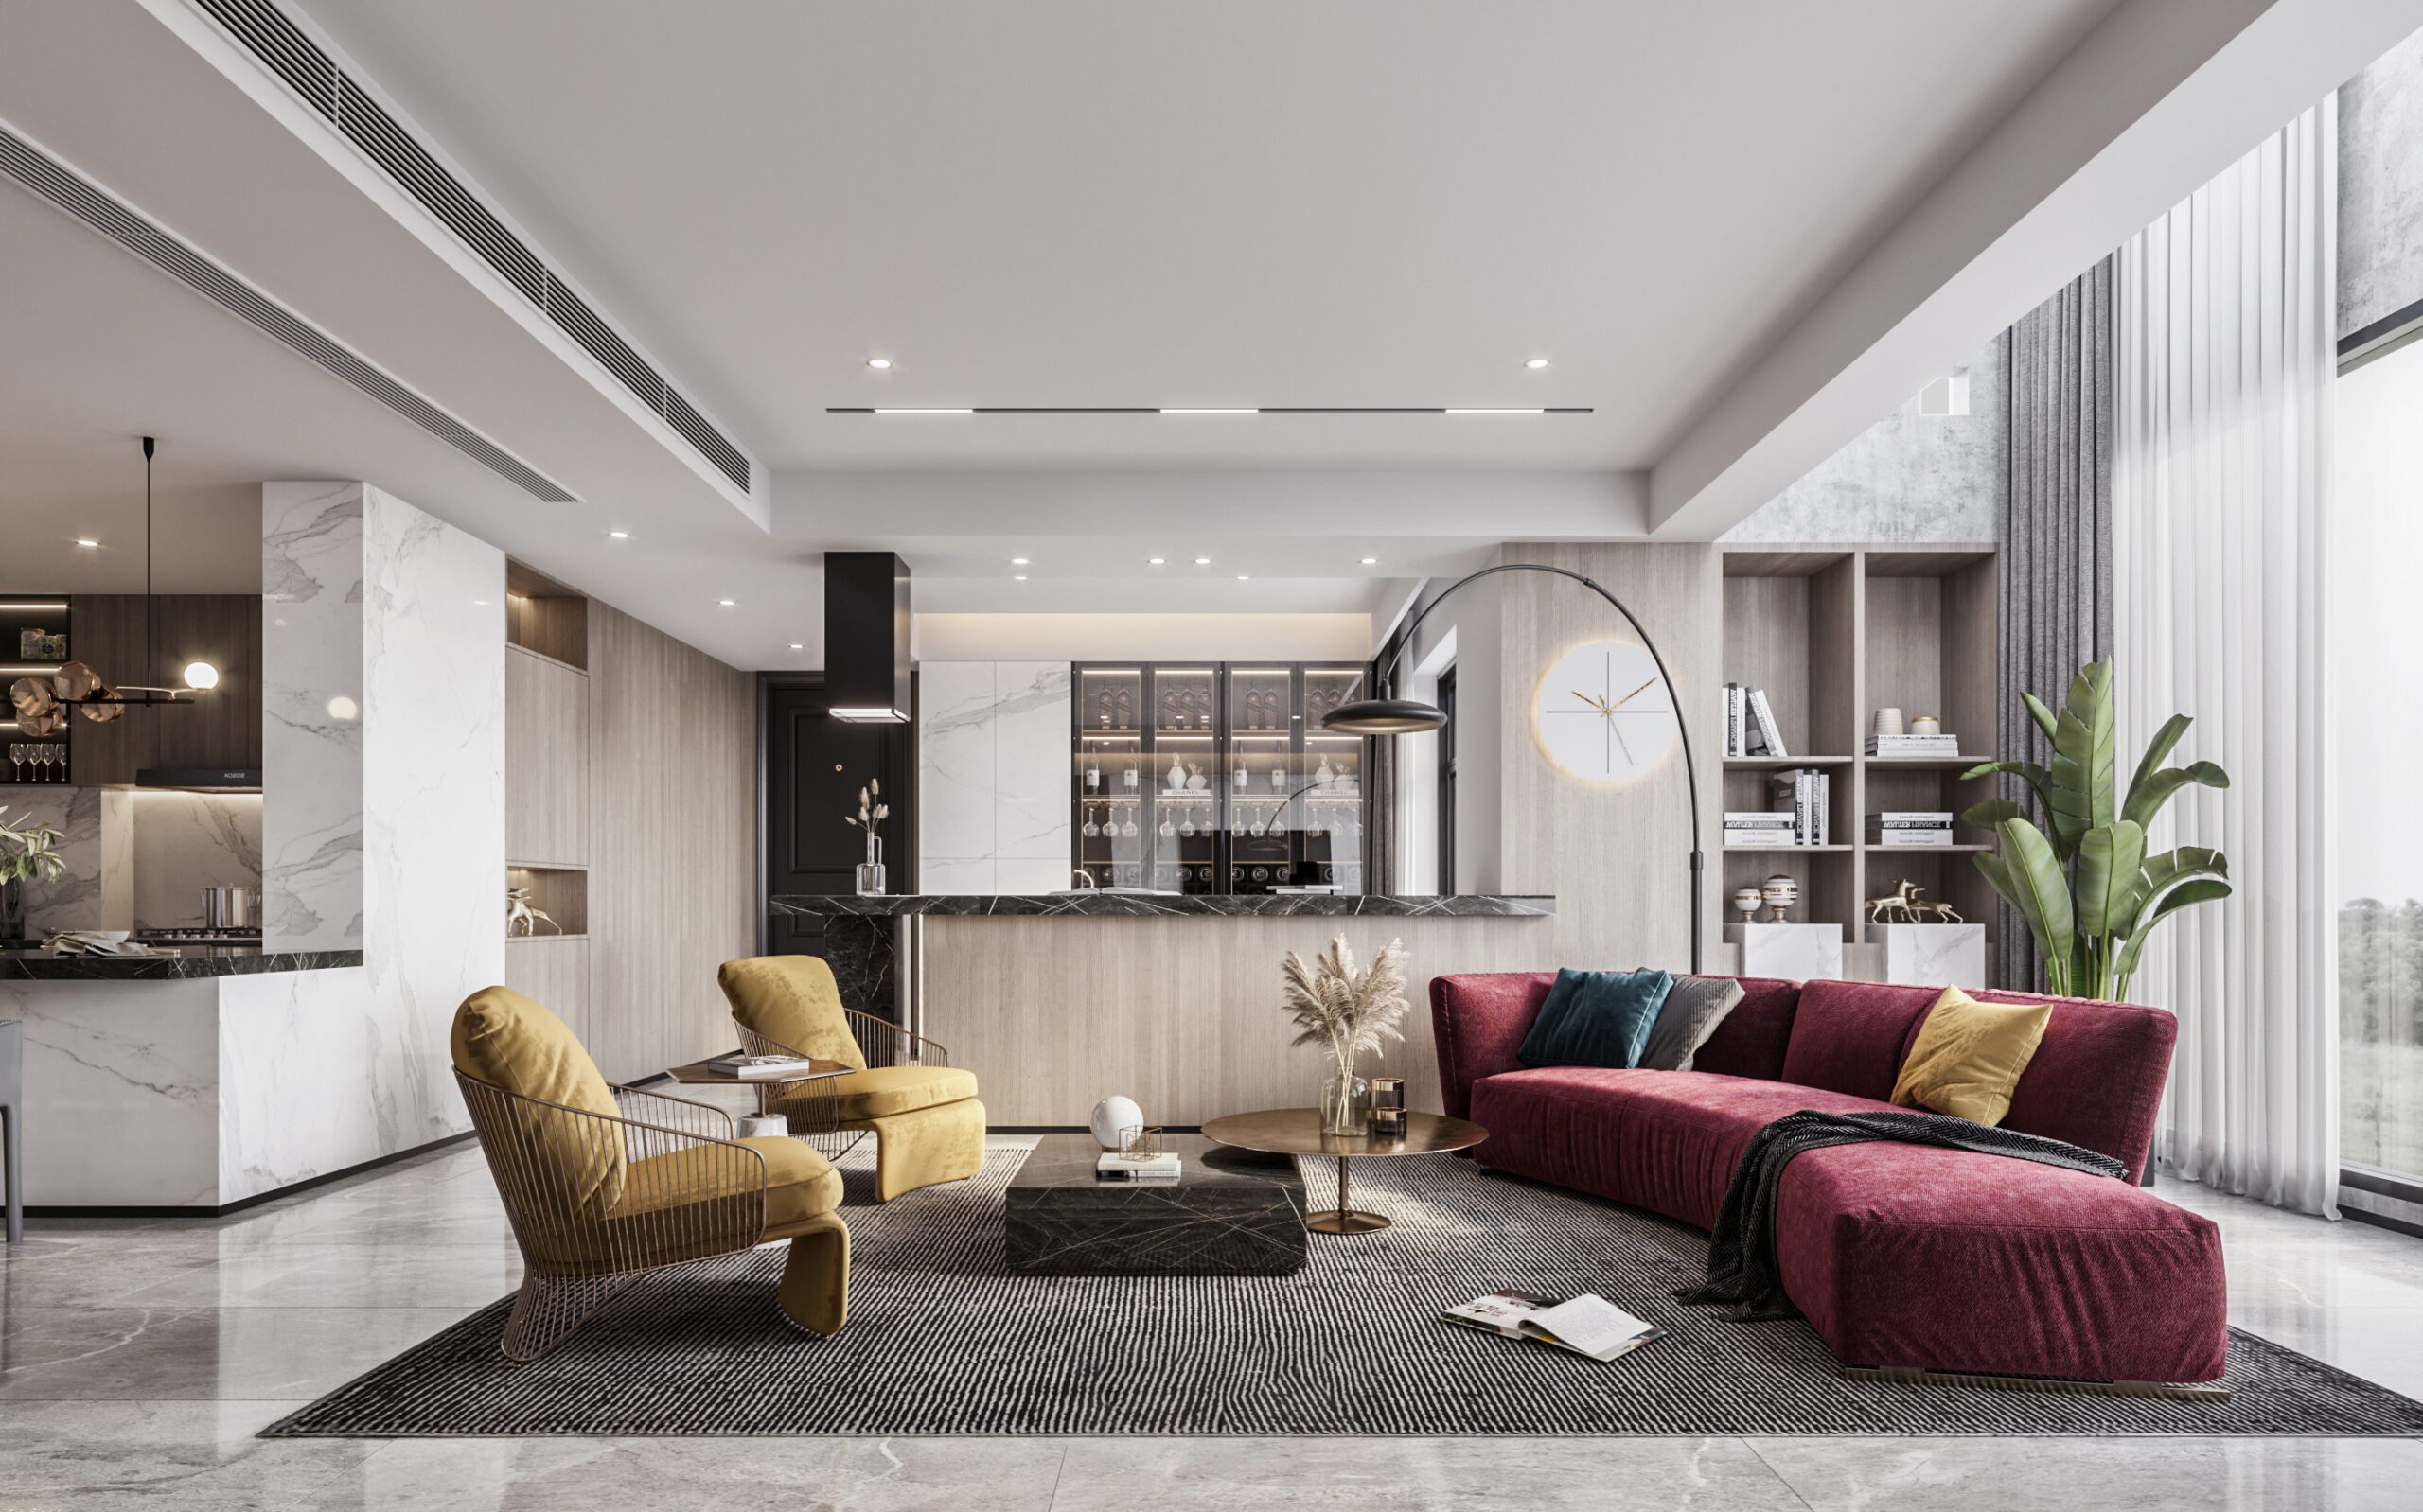 大坪數豪宅設計將休閒區與客廳相結合的設計，讓視野更加開闊通透，造型獨特的單椅穿插其中，處處都透著對生活品質的追求